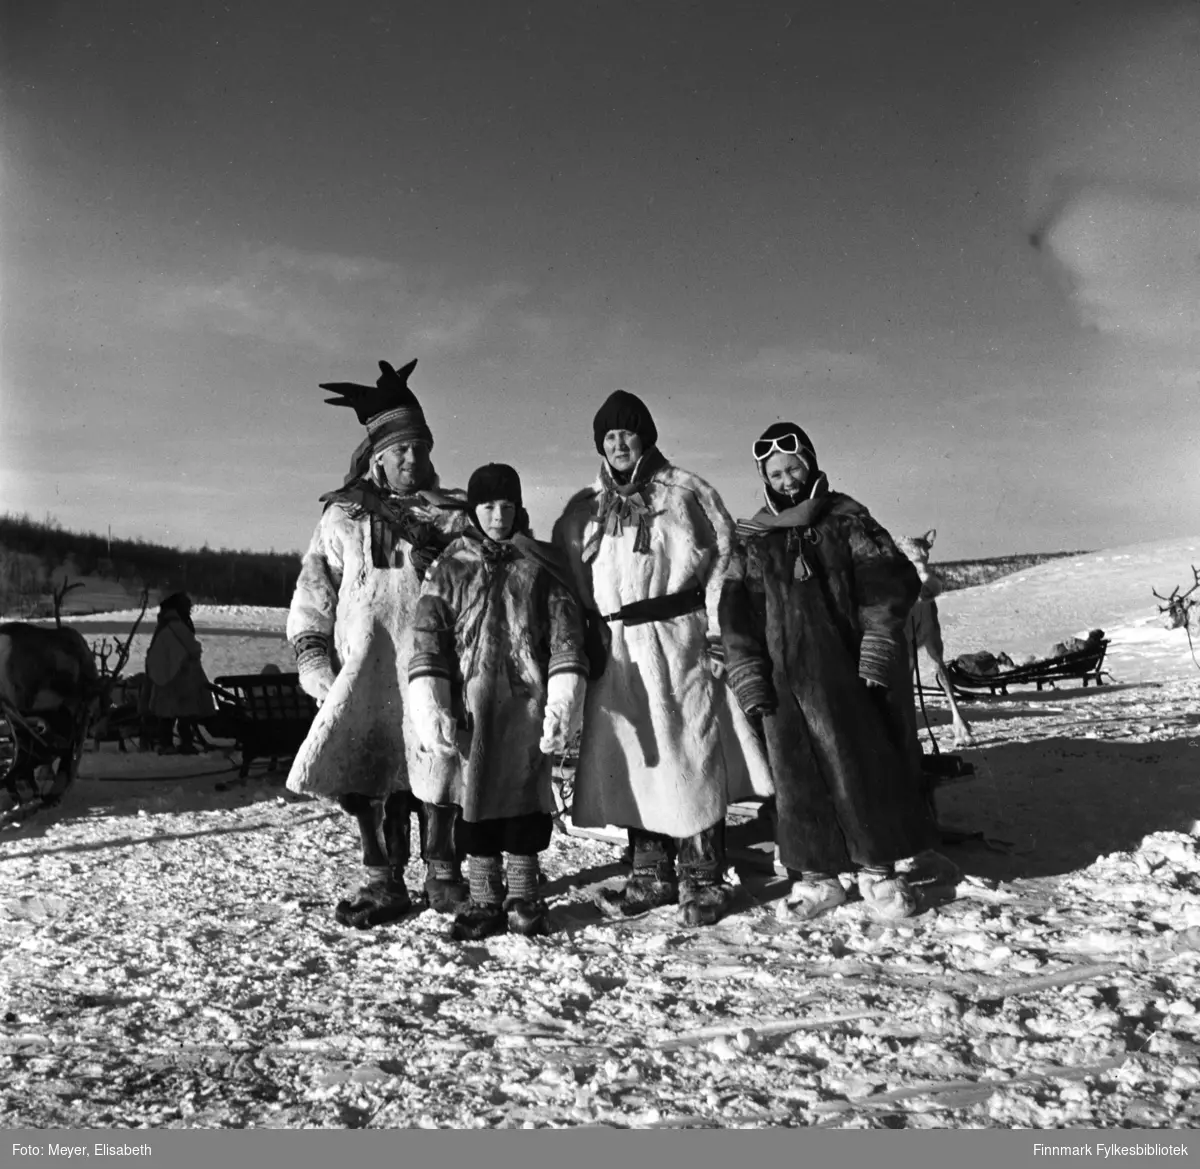 Turister kledd i pesk besøker Statens fjellstue, Suolovuopm i Maze. Personer ukjente. Fotografert ved påsketider 1940. Suolovuopmi fjellstue ble etablert i 1843 og var den første som ble etablert i Finnmark. Etterspørselen etter overnattingssted i indre Finnmark kom da post og fogd skulle ut å reise. Fjellposten, som begynte i 1799 gikk fra Hammerfest til Haparanda om vinteren. Suolovuopmi Fjellstue ble brent under krigen i 1944 og ble så gjenoppbygd etter krigen - og er fortsatt i drift.